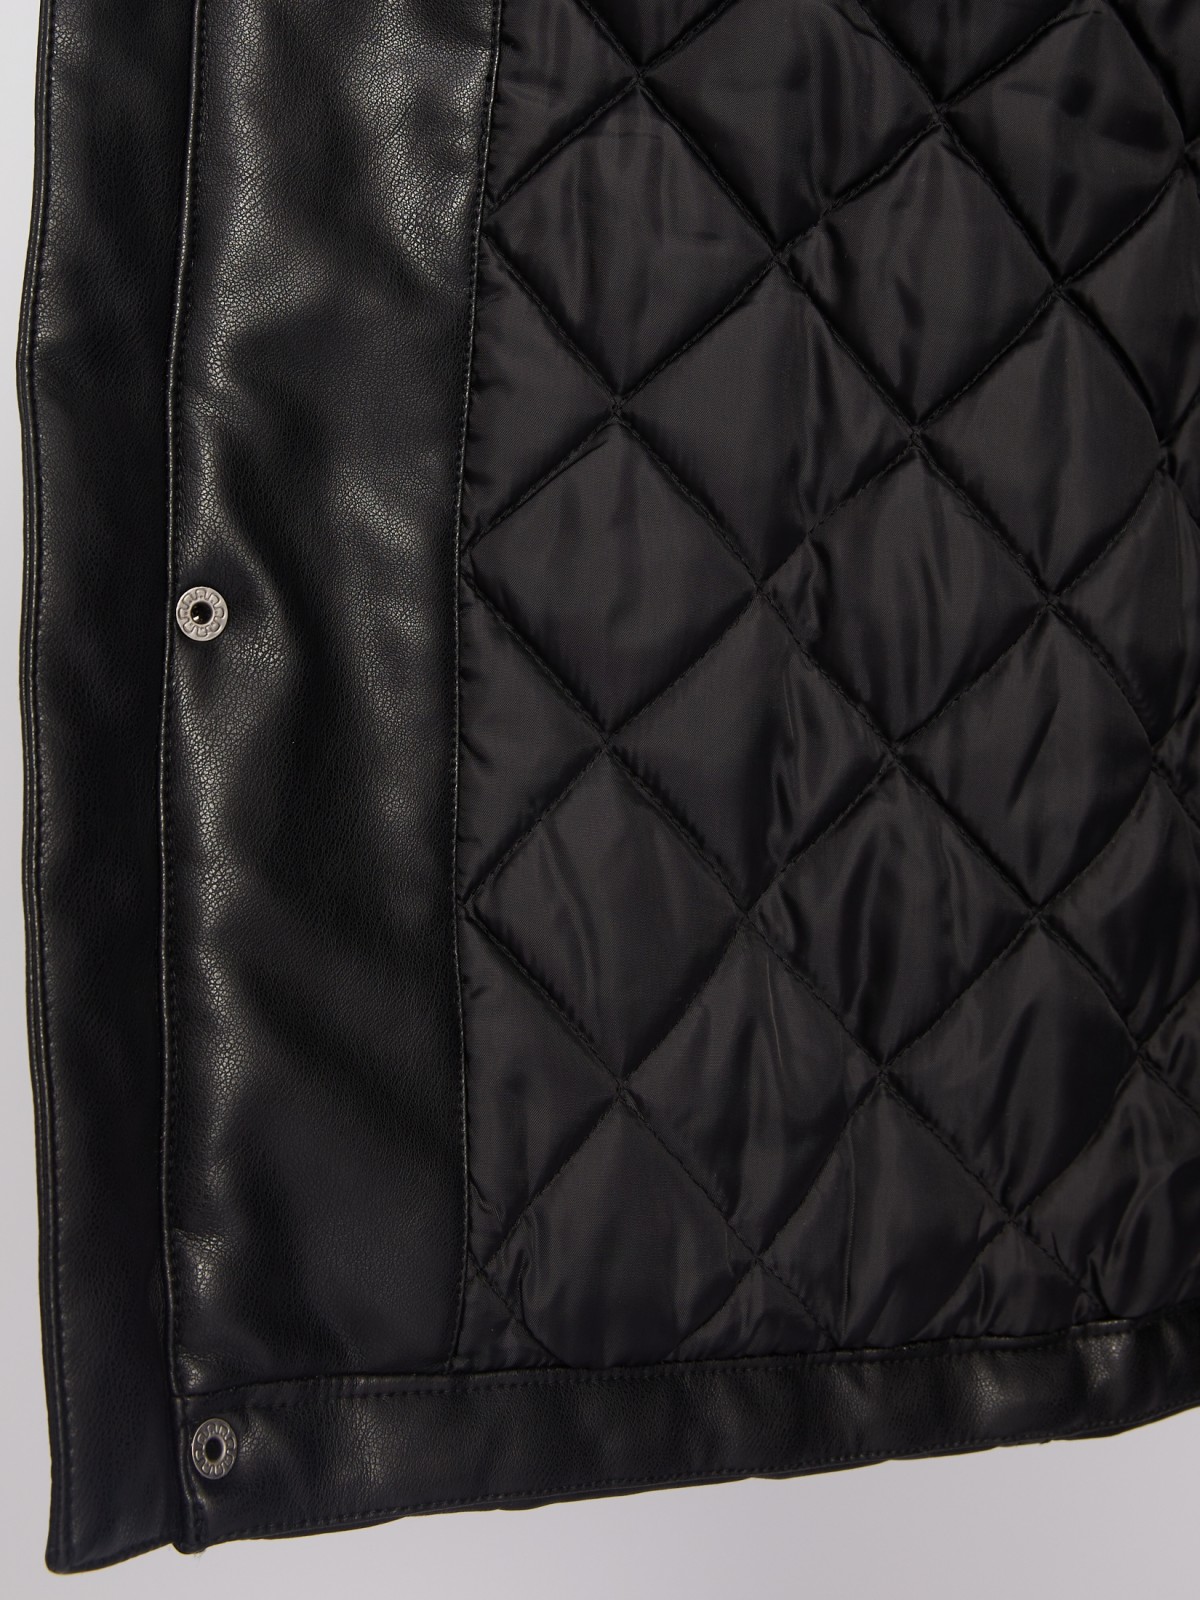 Утеплённая куртка из экокожи на синтепоне с воротником-стойкой zolla 013335102044, цвет черный, размер XXXL - фото 6